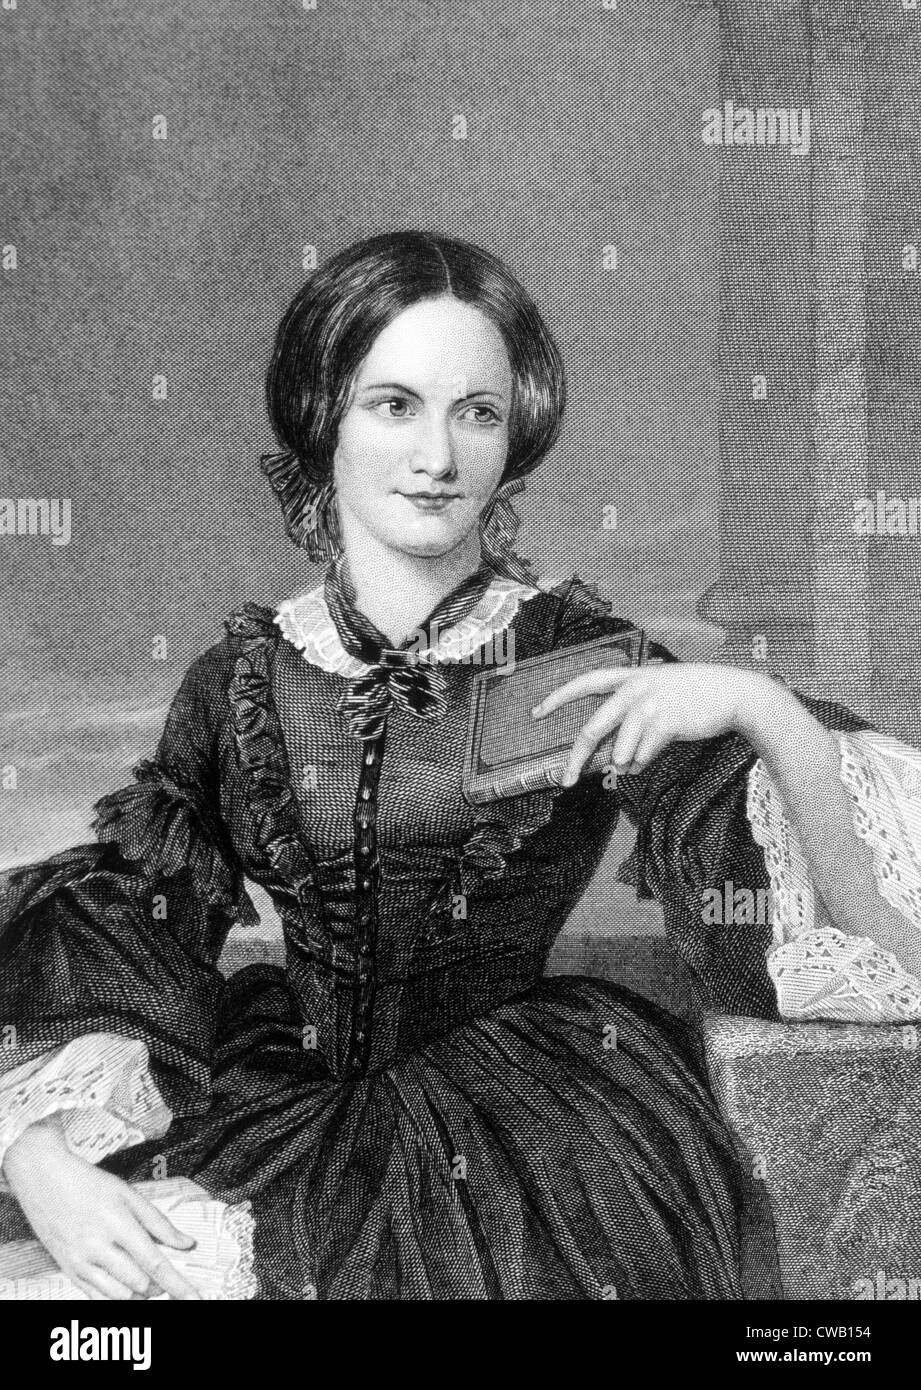 Charlotte Bronte (1816-1855), britische Schriftstellerin. Gravur von ein Originalgemälde von Alonzo Chappel gedruckt in den frühen 1870er Jahren. Stockfoto